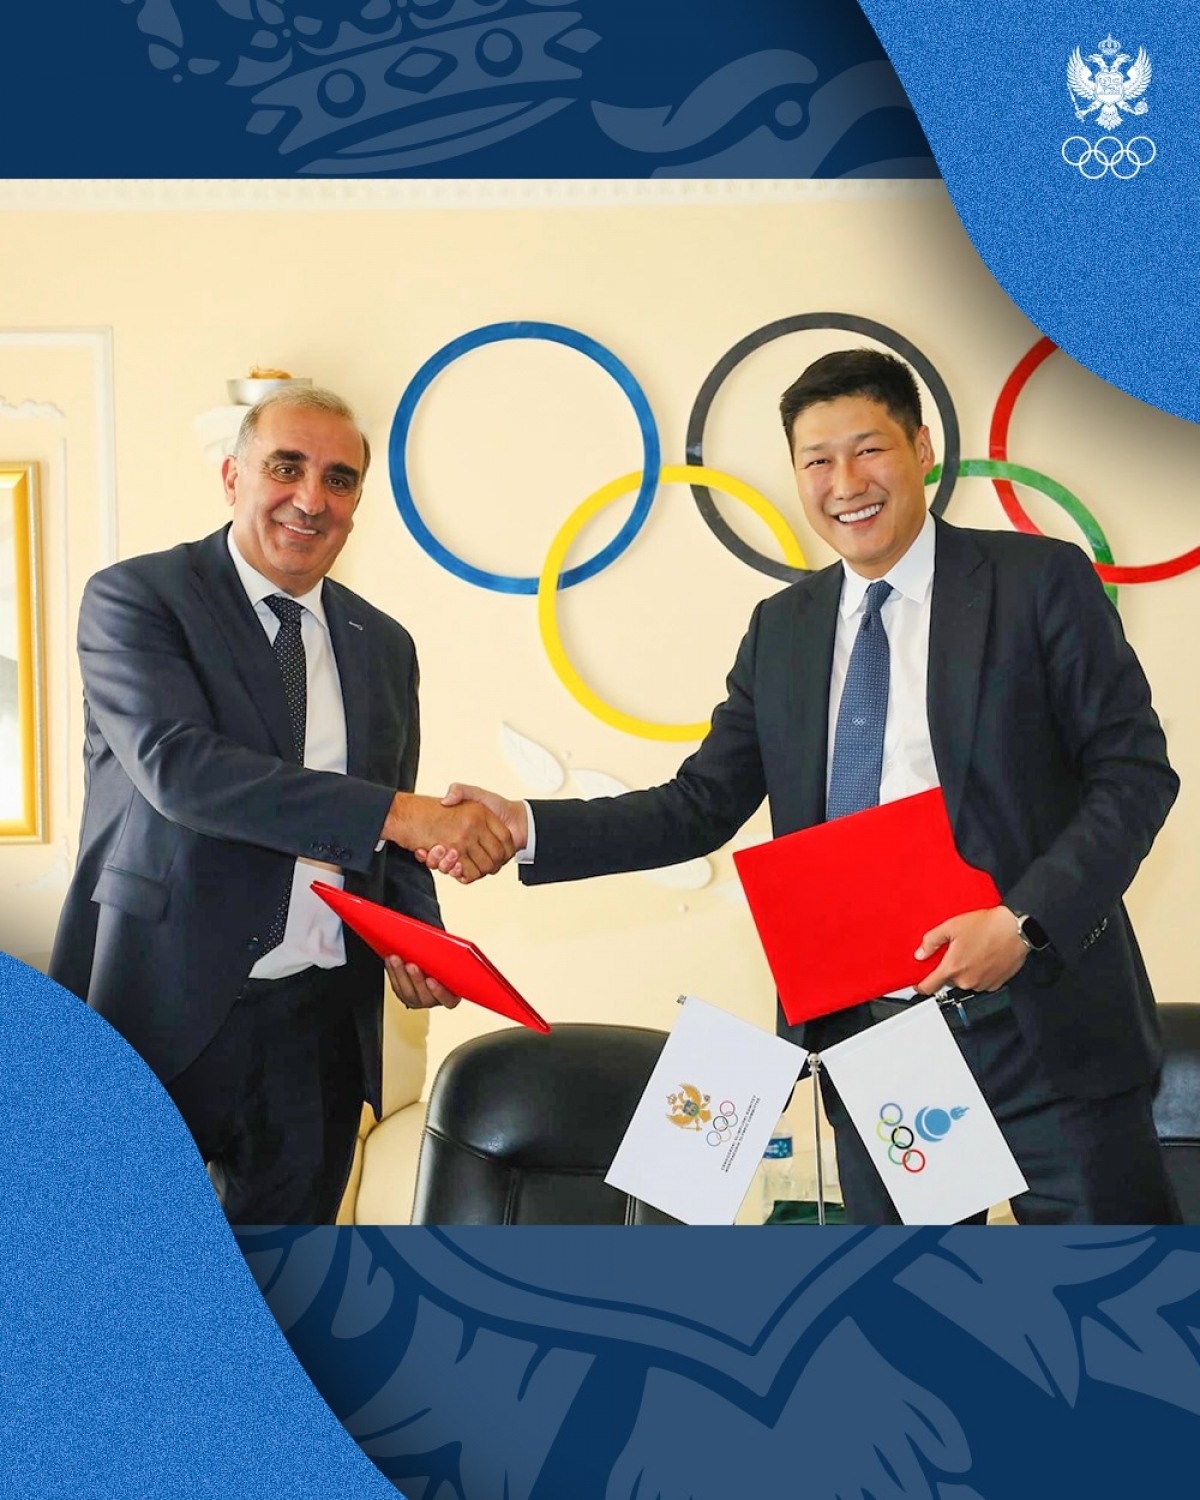 Crnogorski olimpijski komitet i Olimpijski komitet Mongolije potpisali Memorandum o razumijevanju